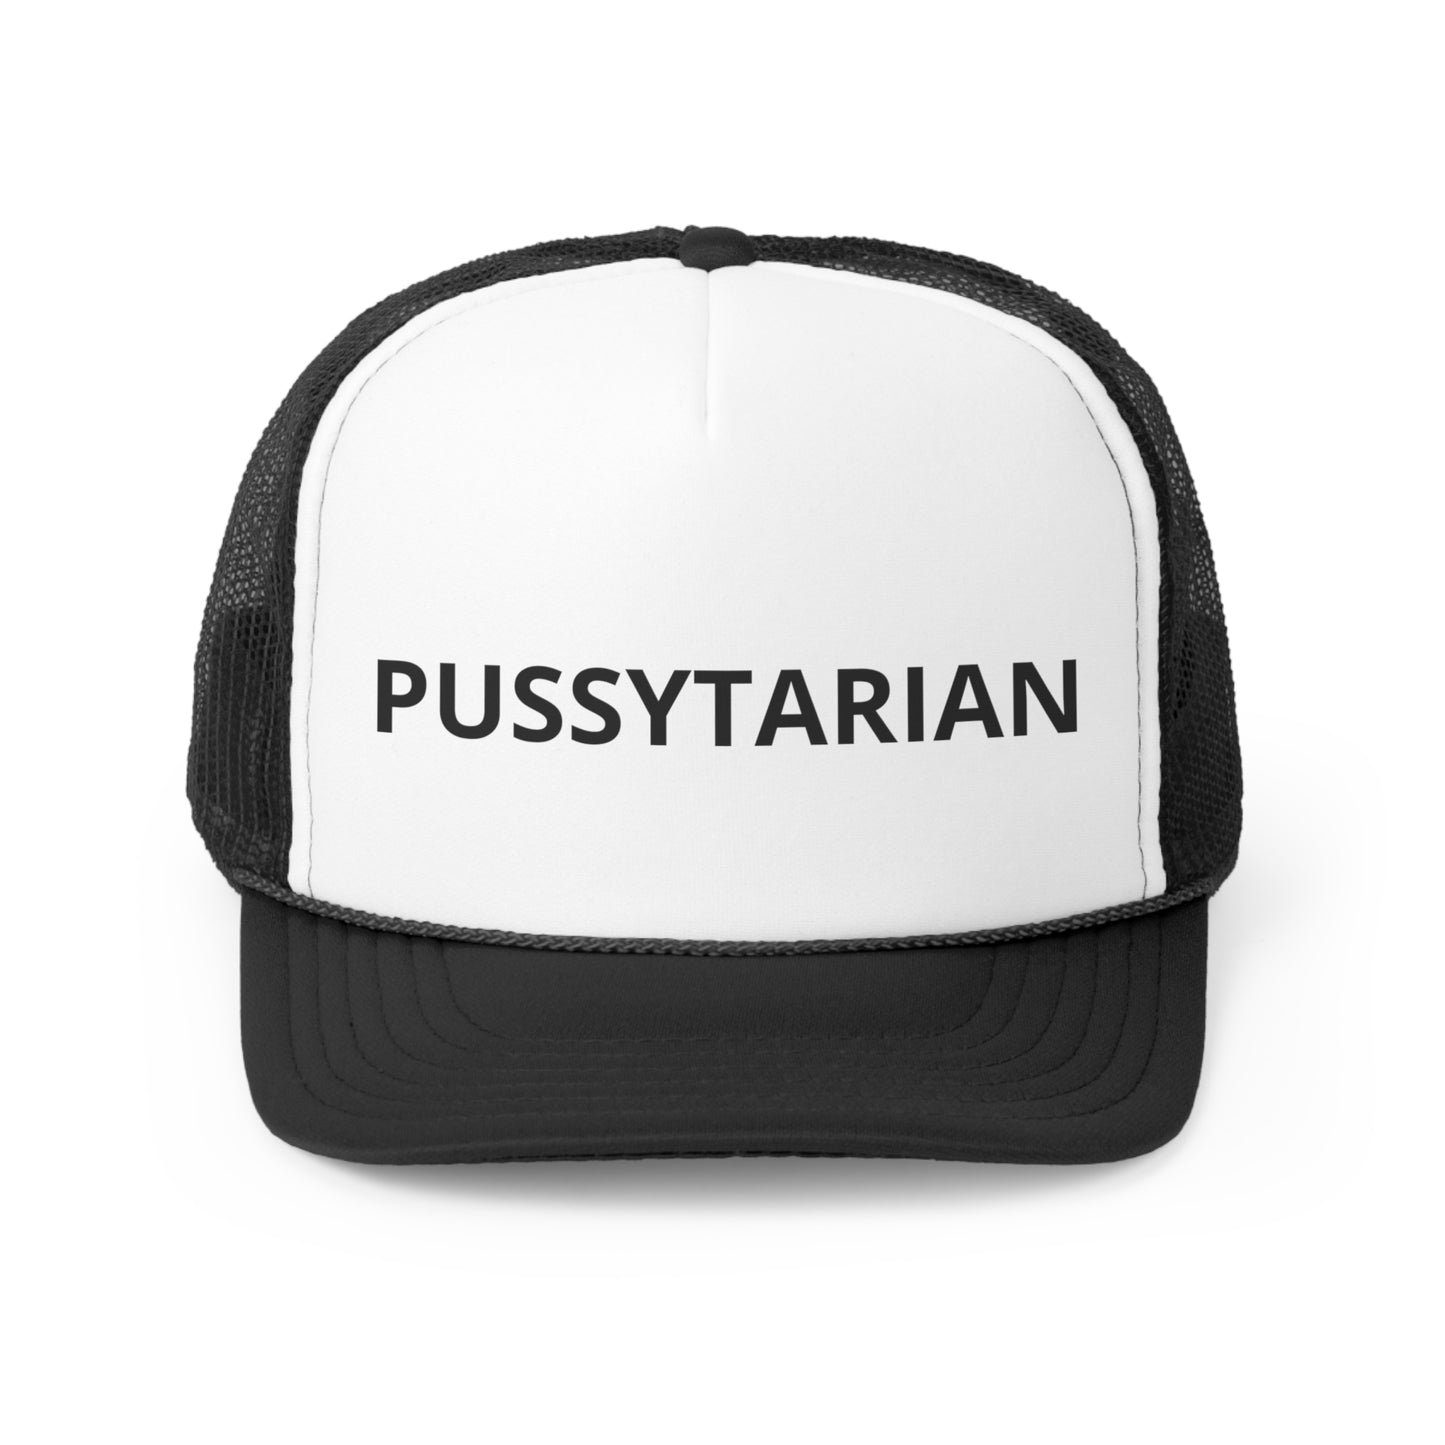 Pussytarian Trucker Cap